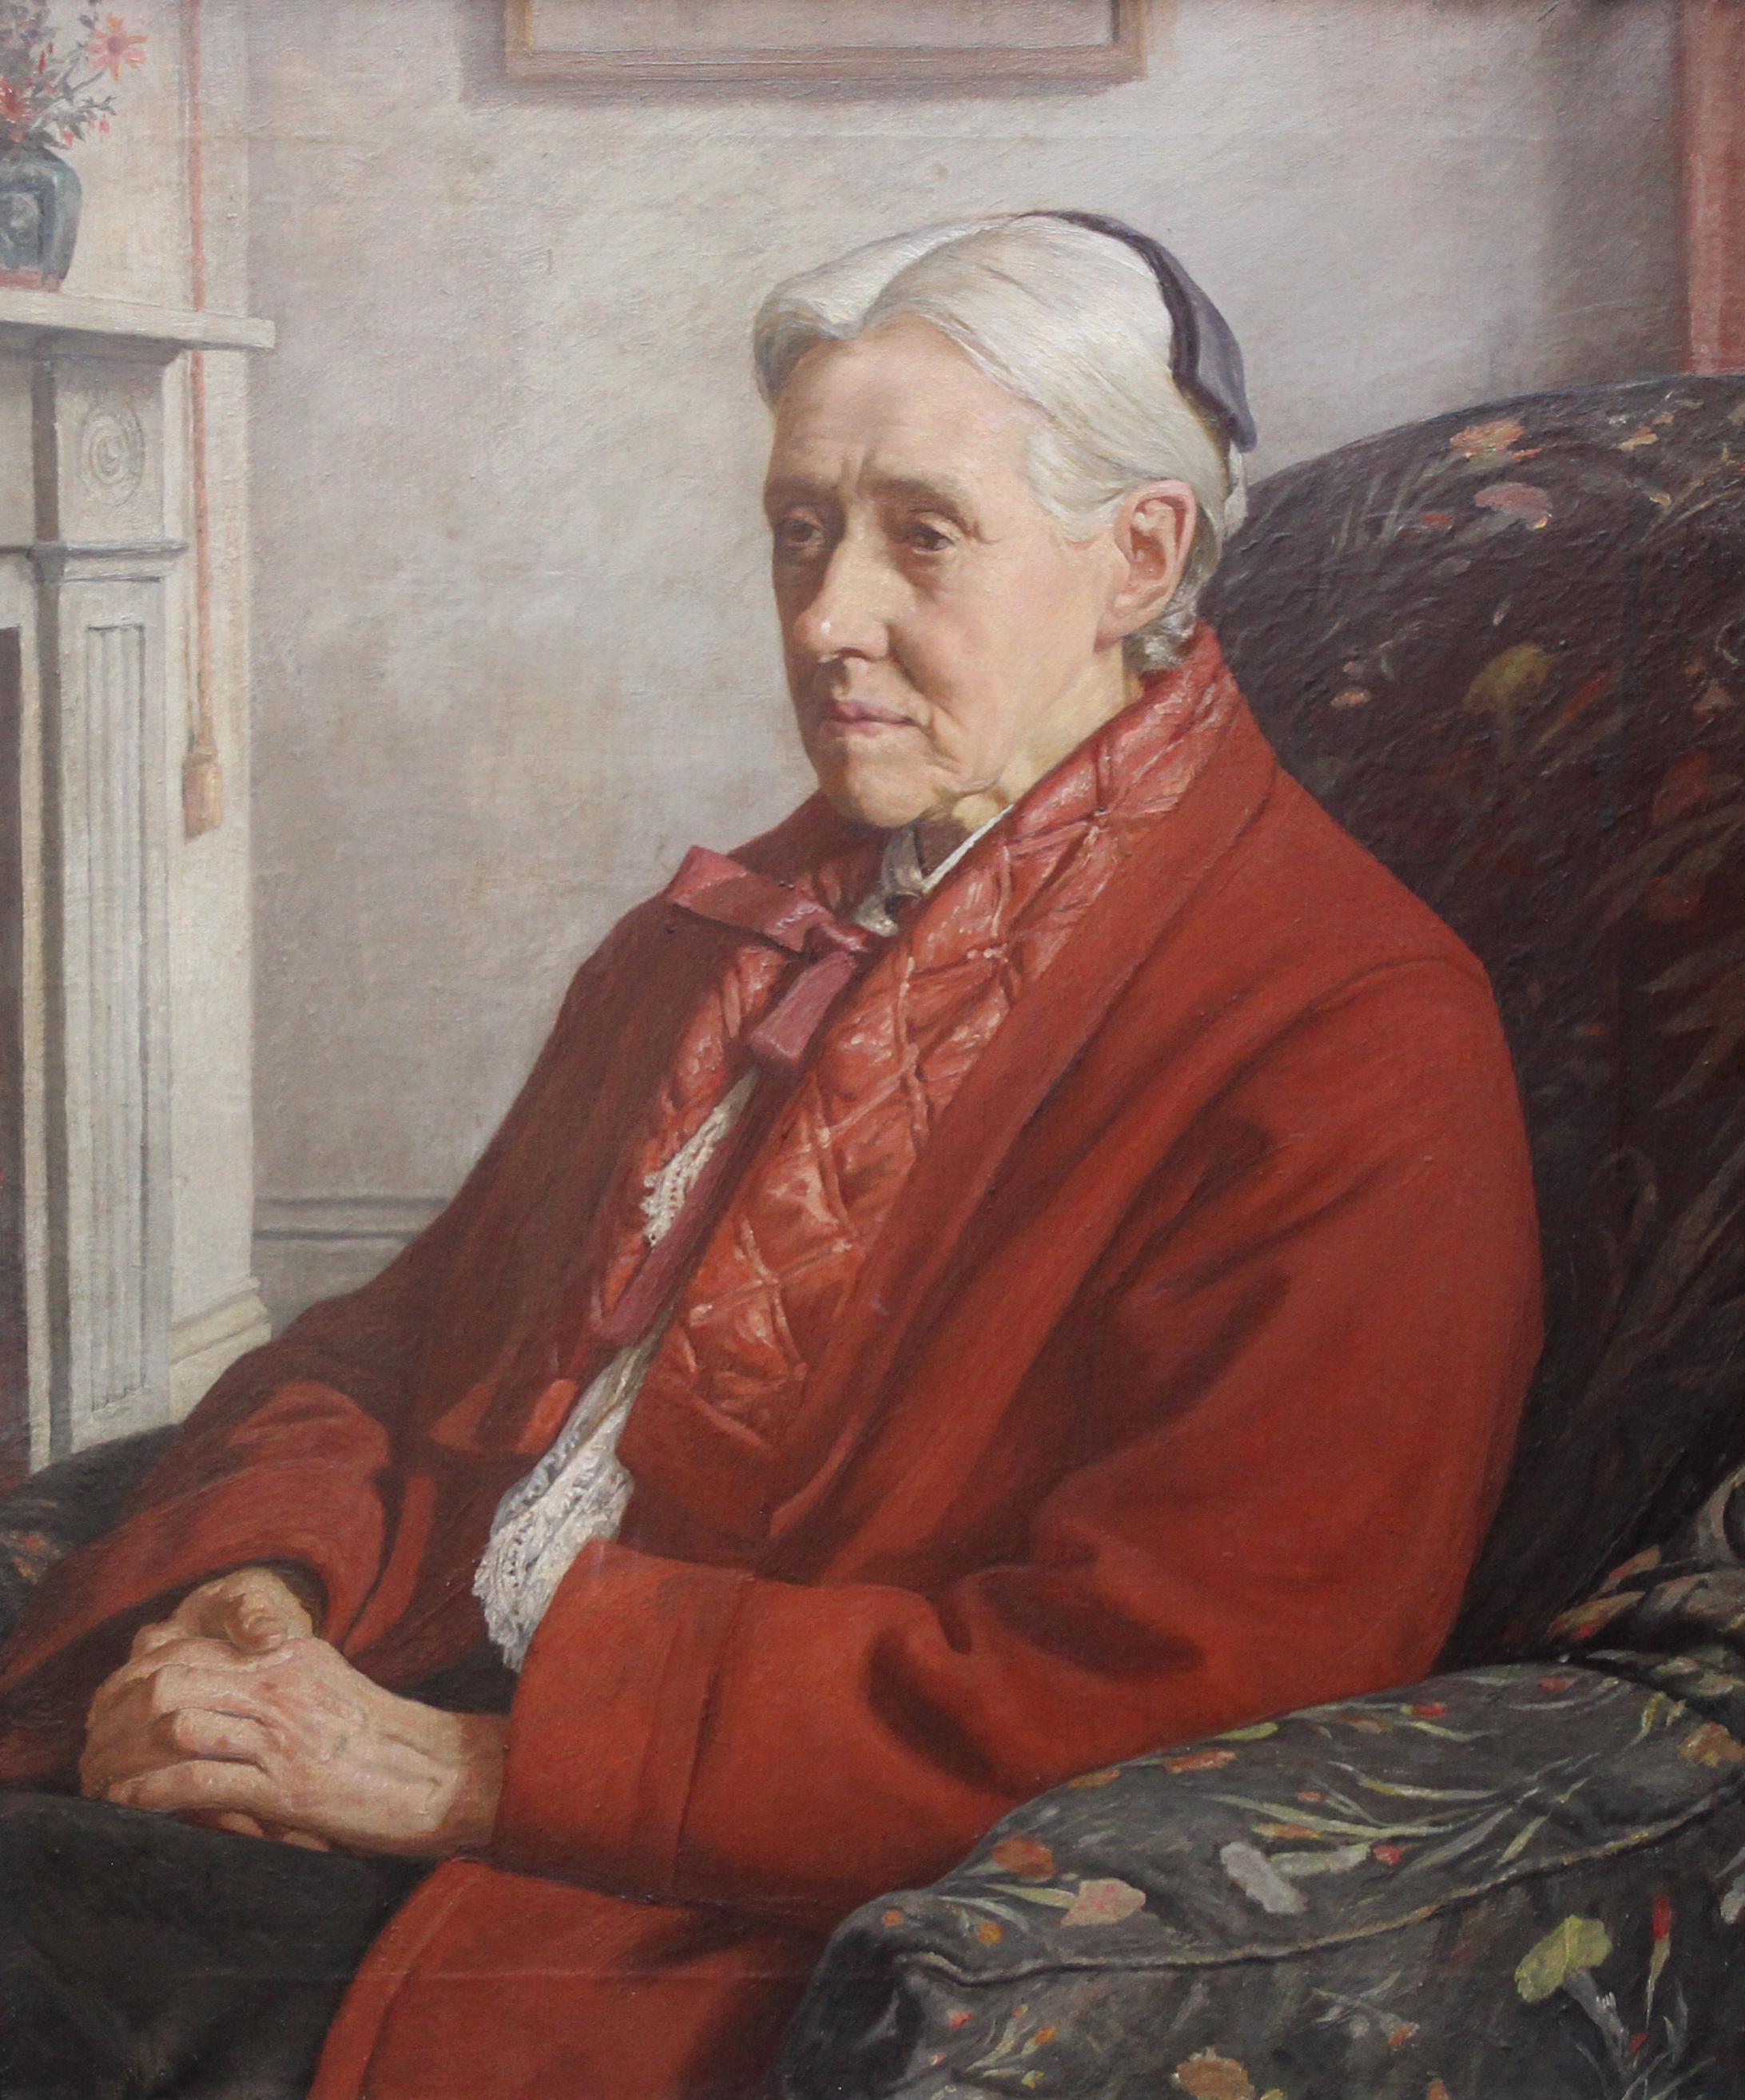 Porträt von Susan Isabel Dacre – Britisches exh-Ölgemälde einer feministischen Künstlerin  – Painting von Francis Dodd